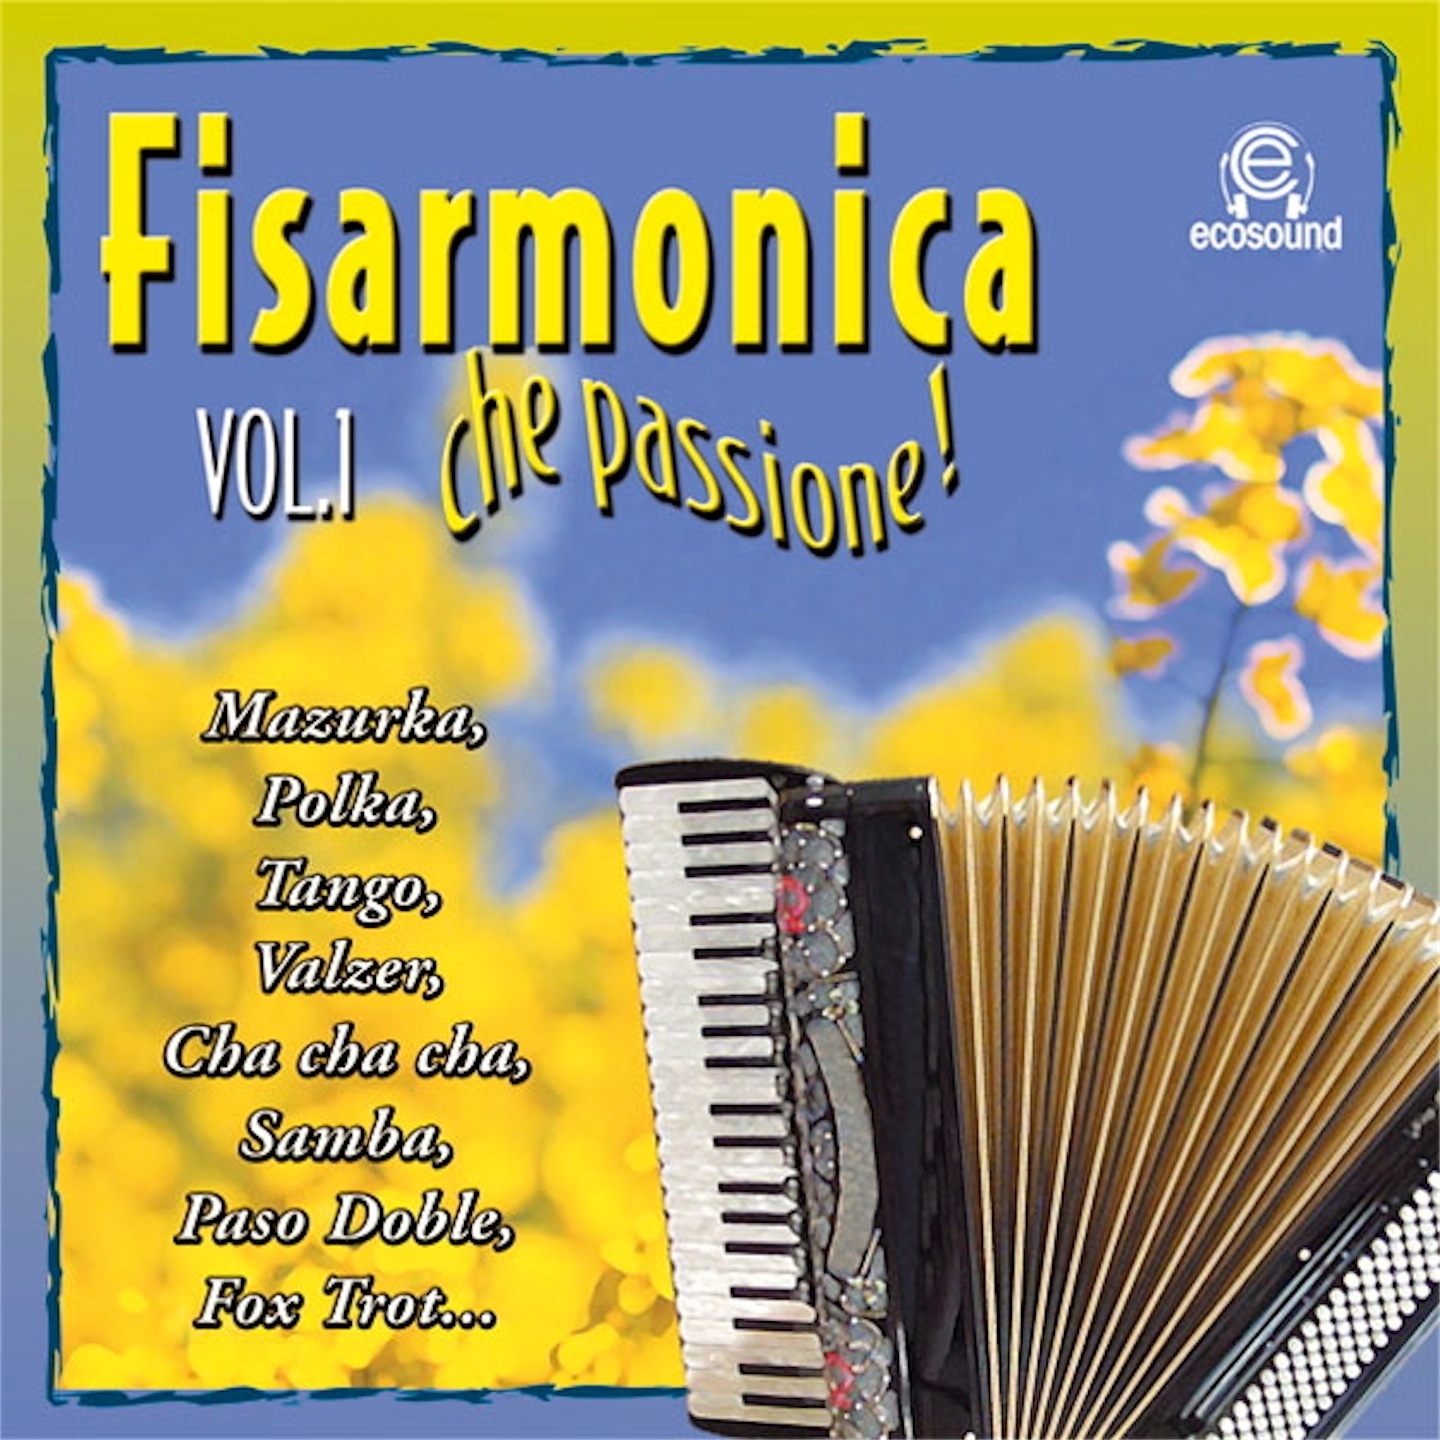 Fisarmonica che passione, Vol. 1 (Ecosound musica di liscio)